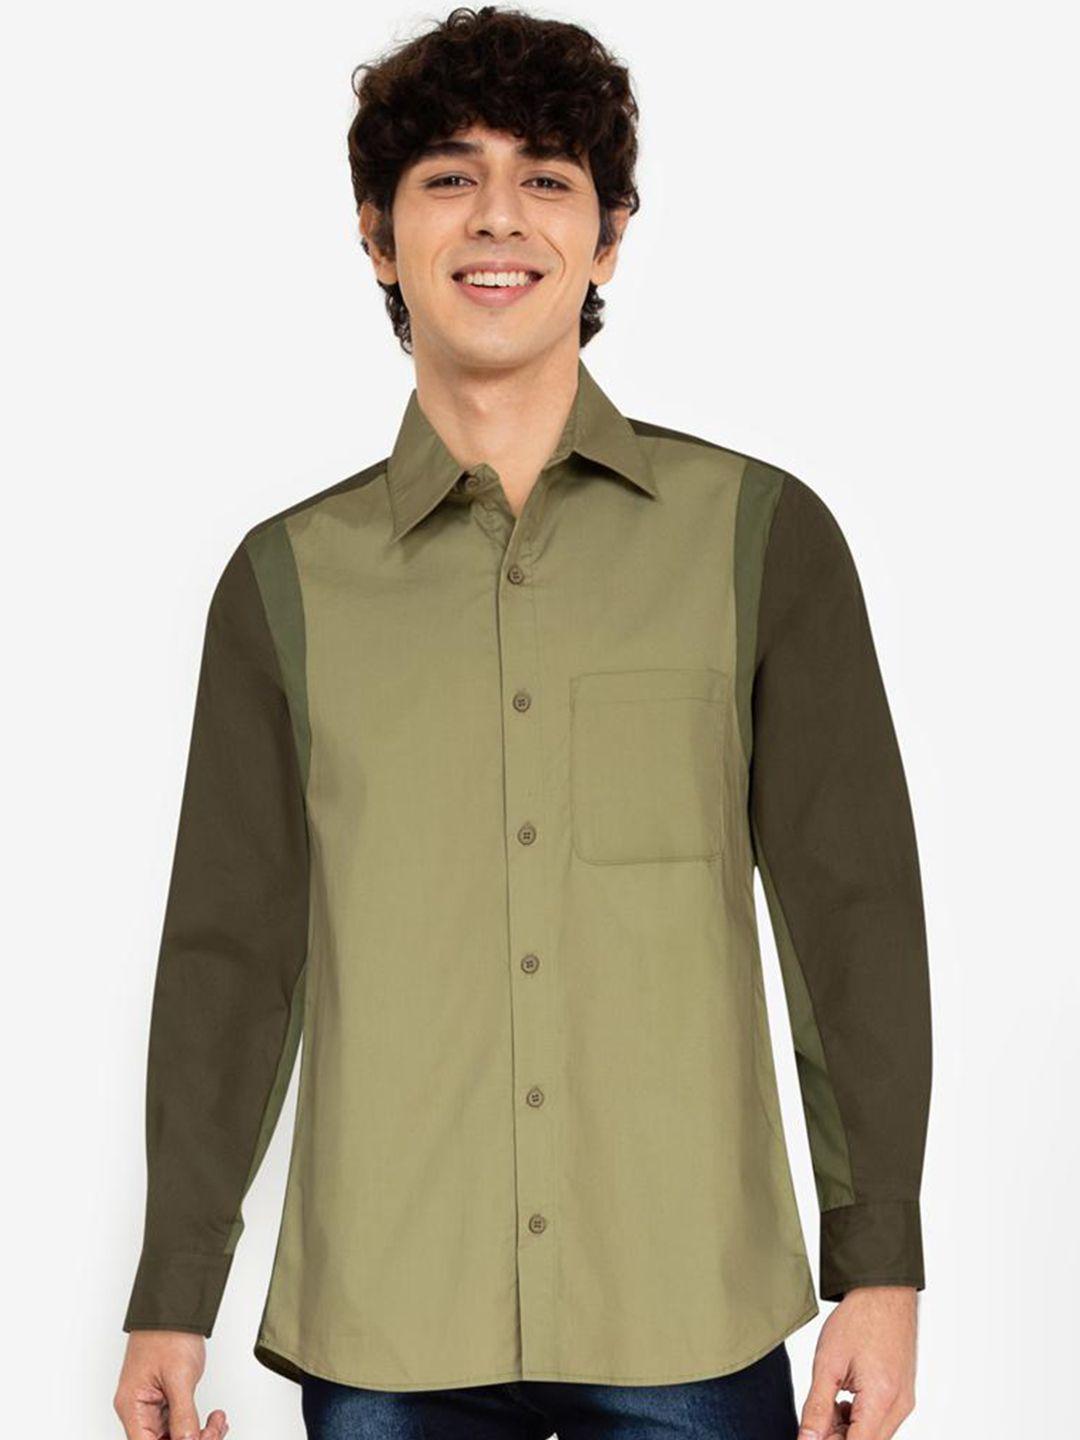 zalora basics men multicoloured colourblocked casual shirt